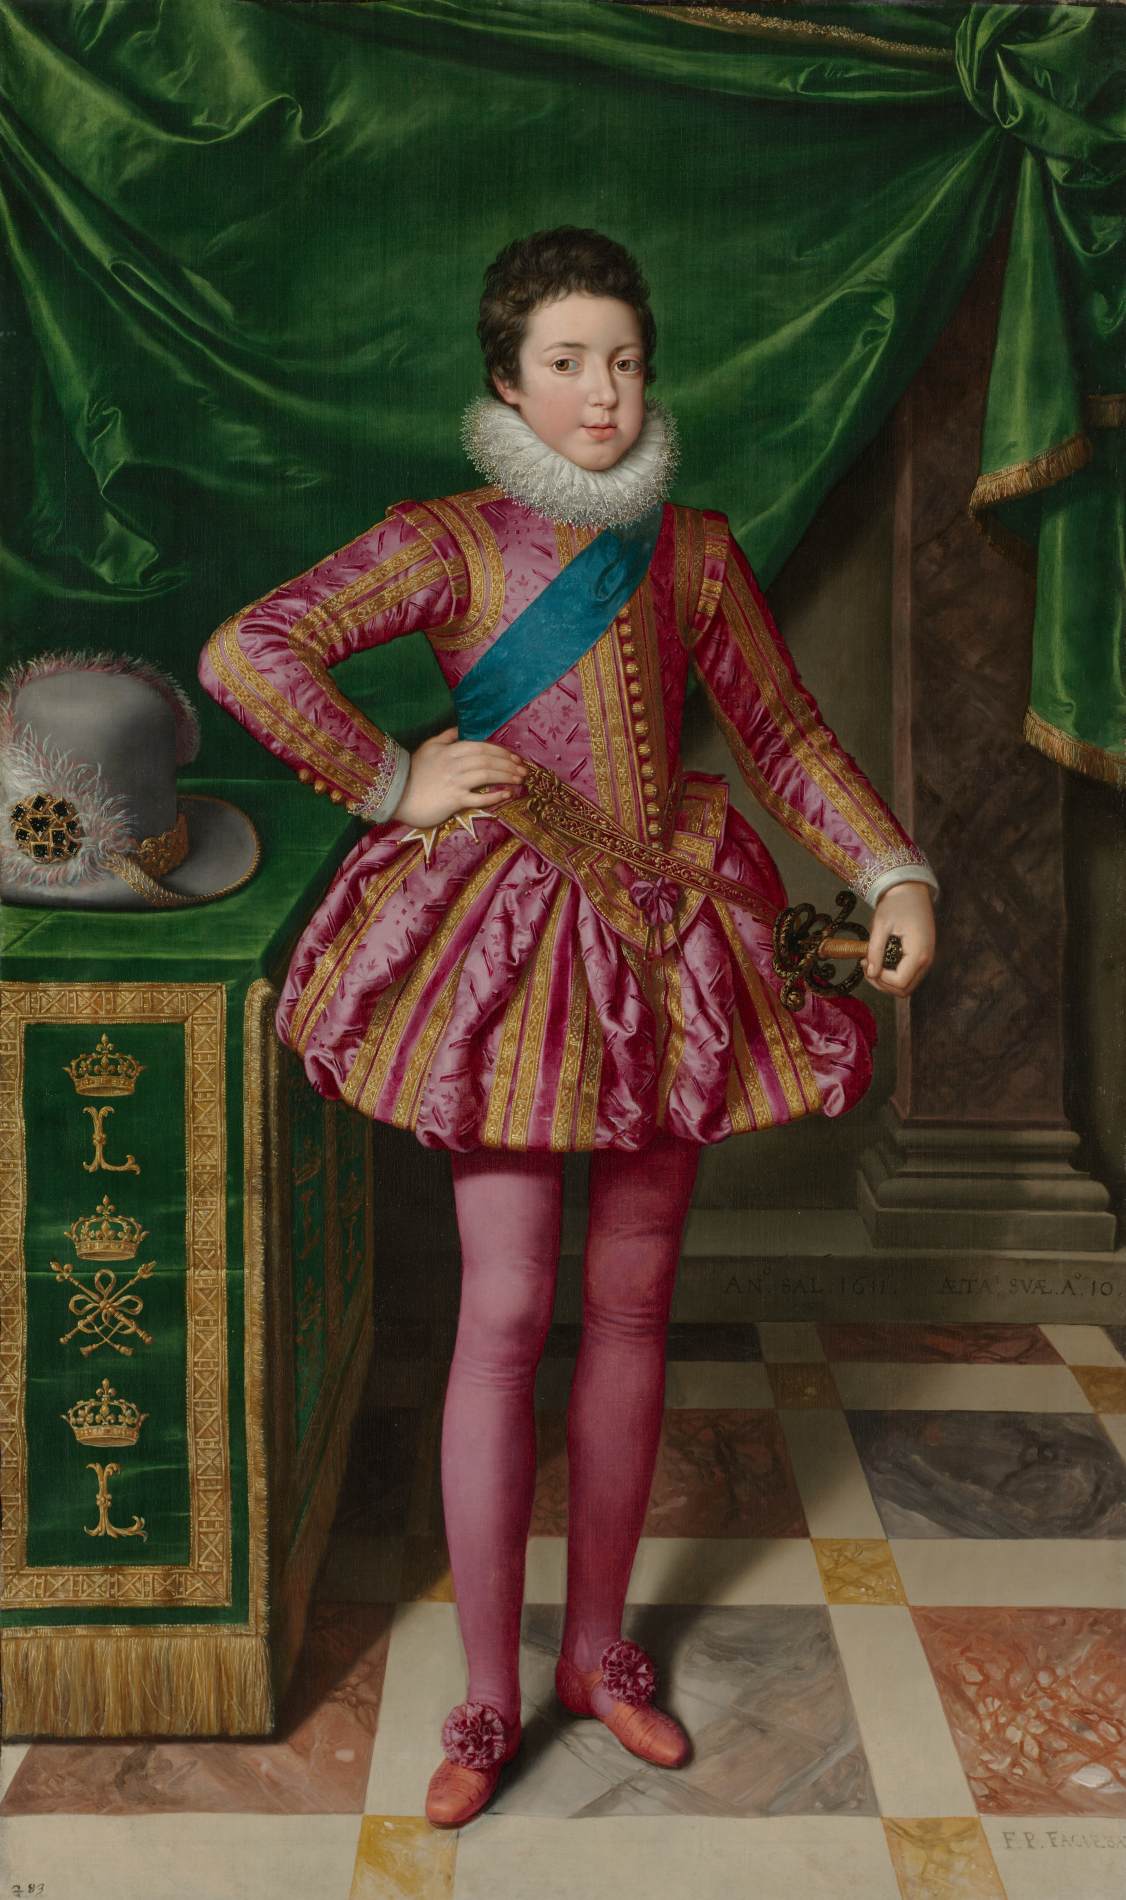 Louis XIII quand j'étais enfant